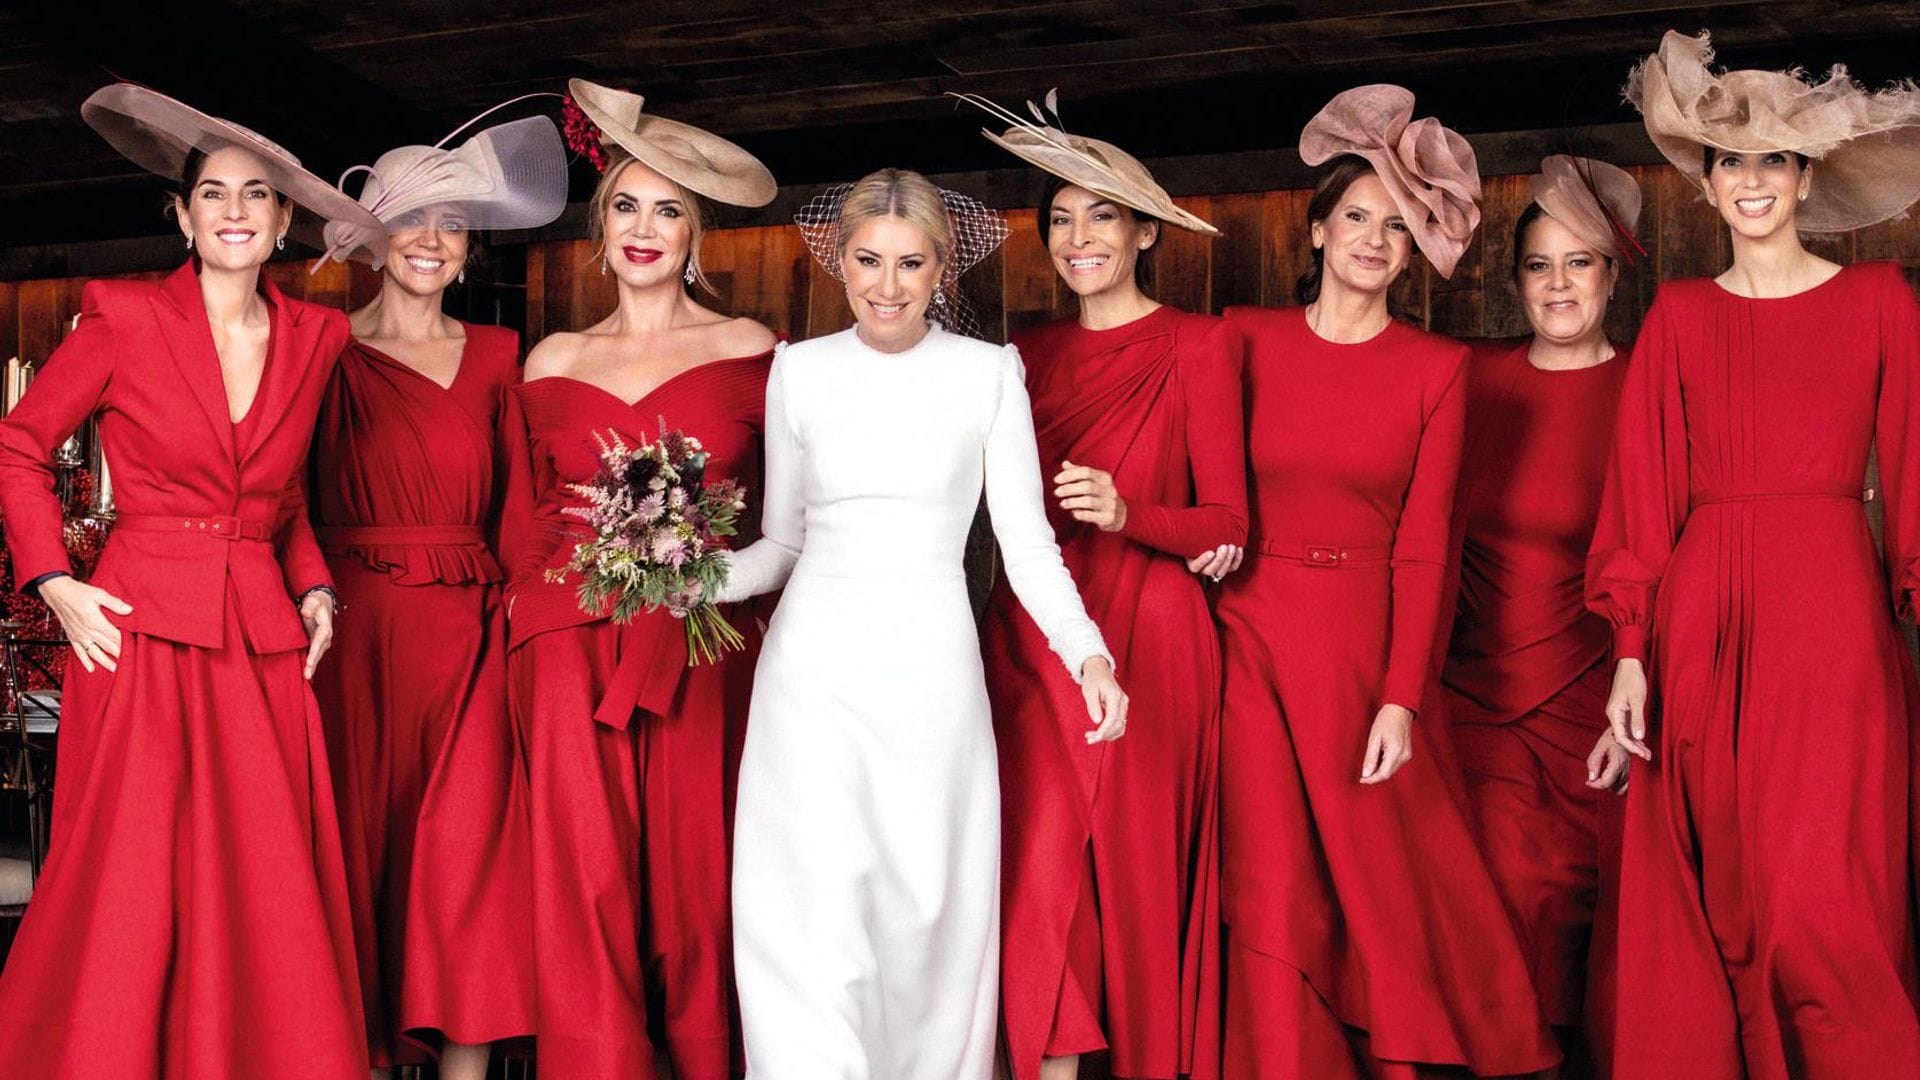 Damas de honor en rojo, la elección infalible de la novia más ‘chic’ del invierno, Cristina Reyes